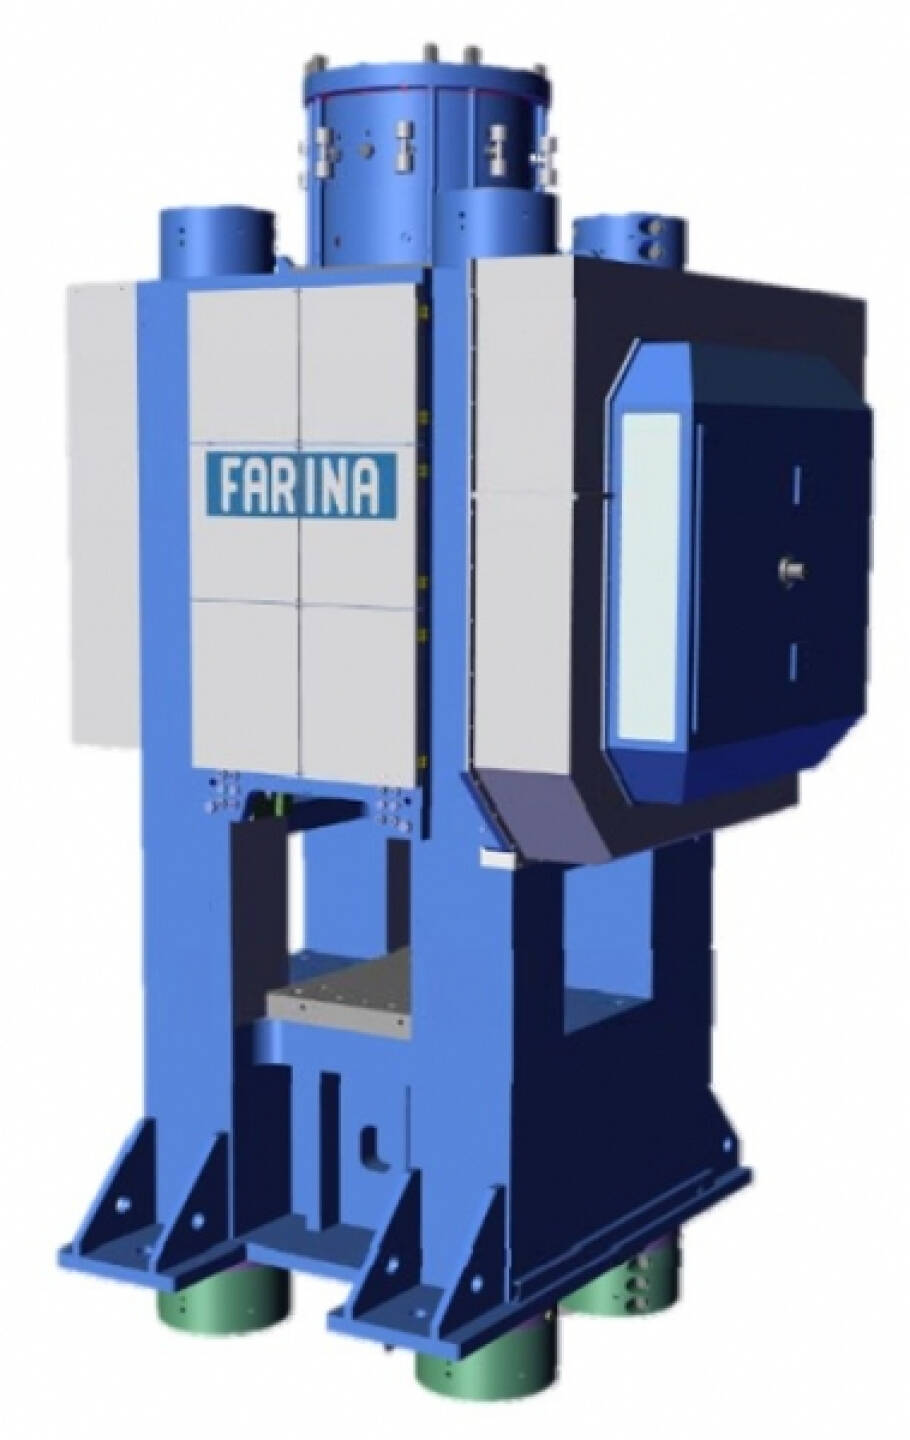 Die Andritz-Company Schuler wird über ihre Tochtergesellschaft Farina eine der weltweit größten und modernsten mechanischen Schmiedepressen an thyssenkrupp, Credit: Andritz